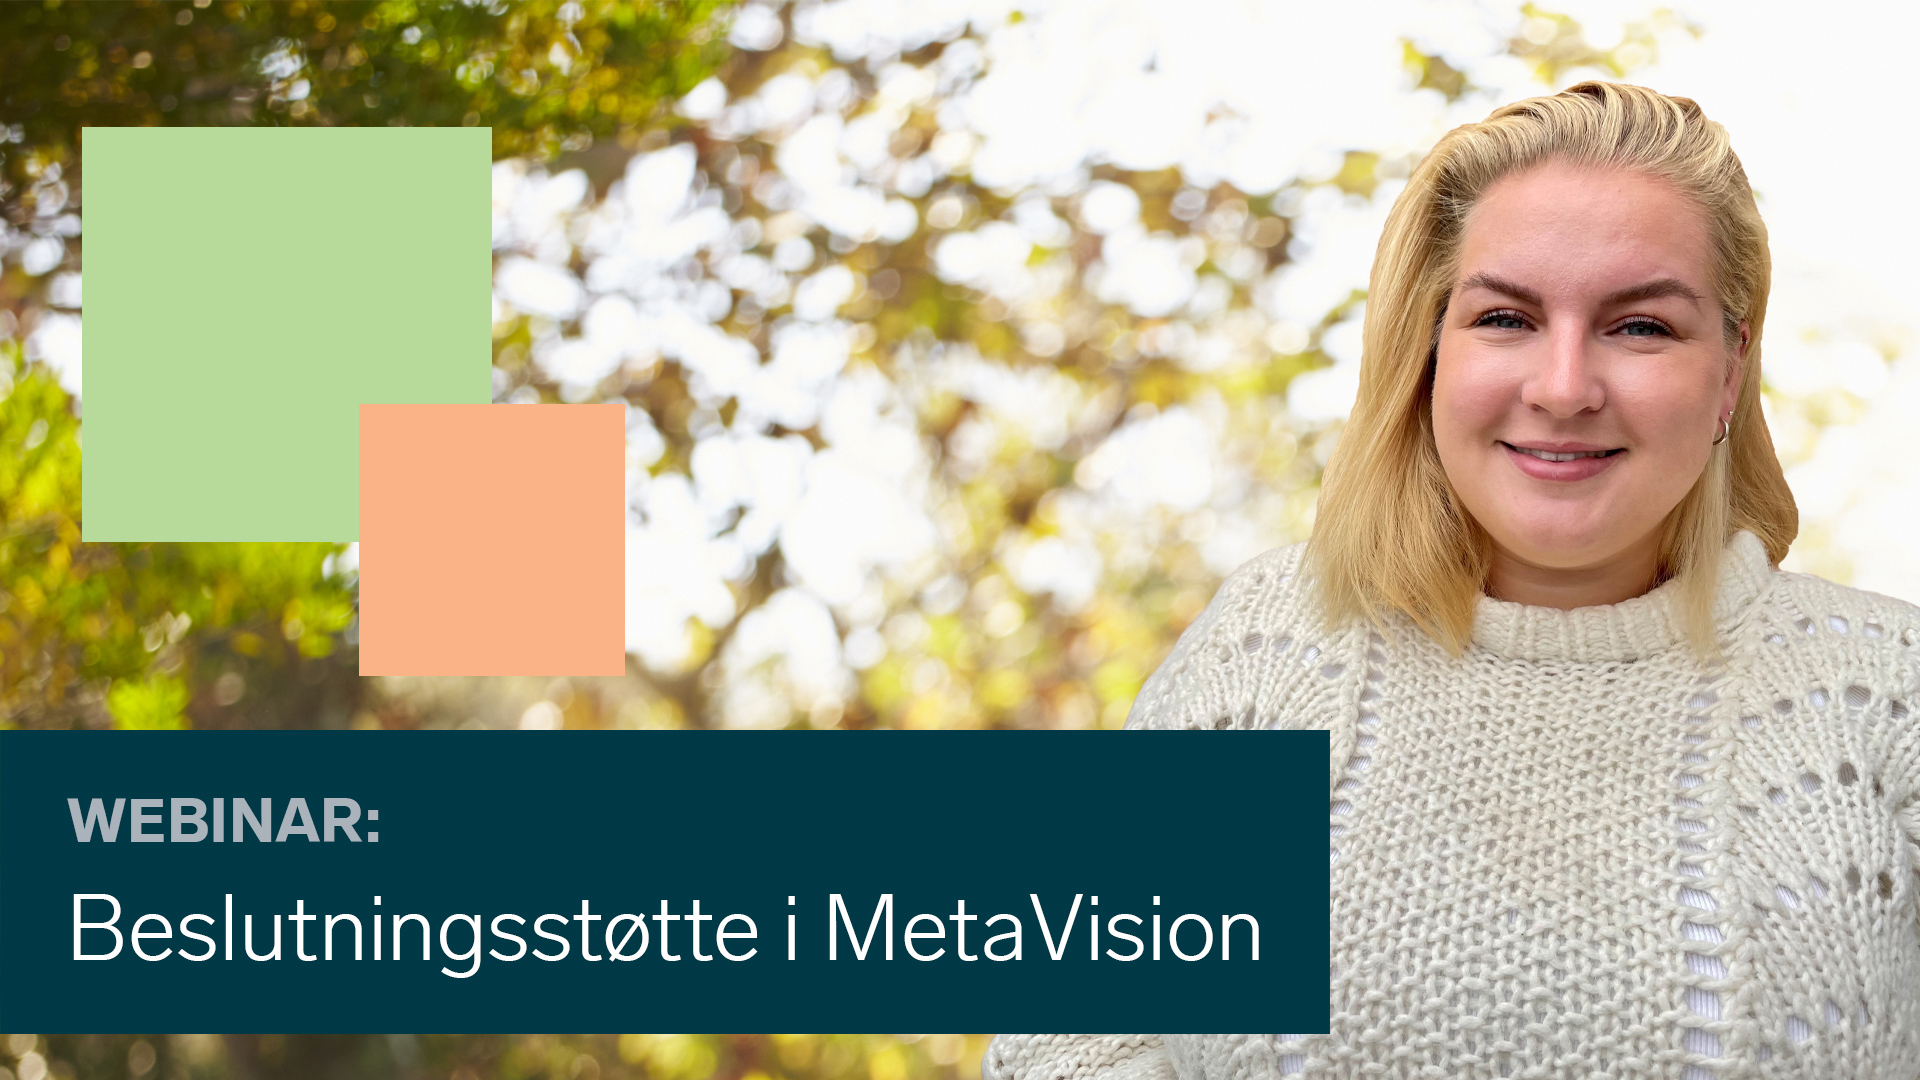 Karoline Hansen presenterte om beslutningsstøtte i MetaVision.